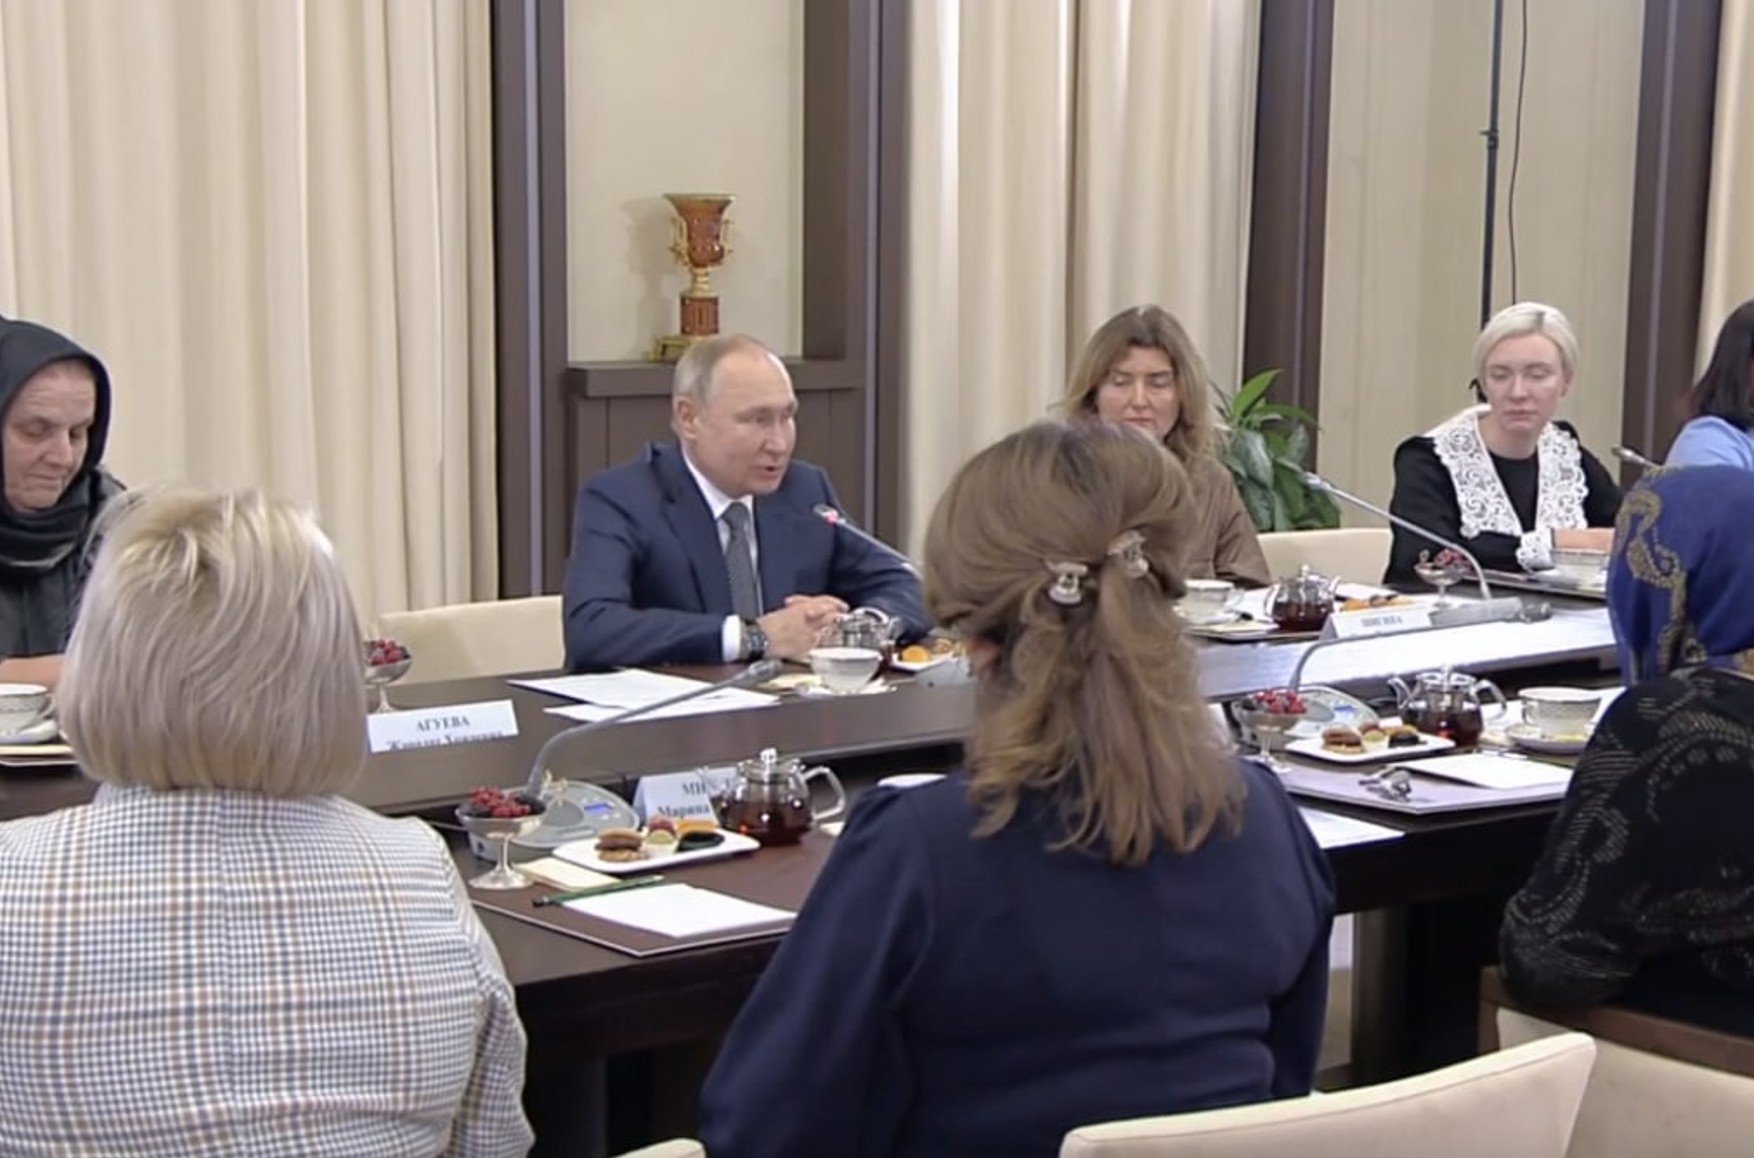 Путин провел встречу с матерями участников войны. На нее не позвали «Комитет солдатских матерей», но пригласили чиновниц и членов «ЕР» и ОНФ